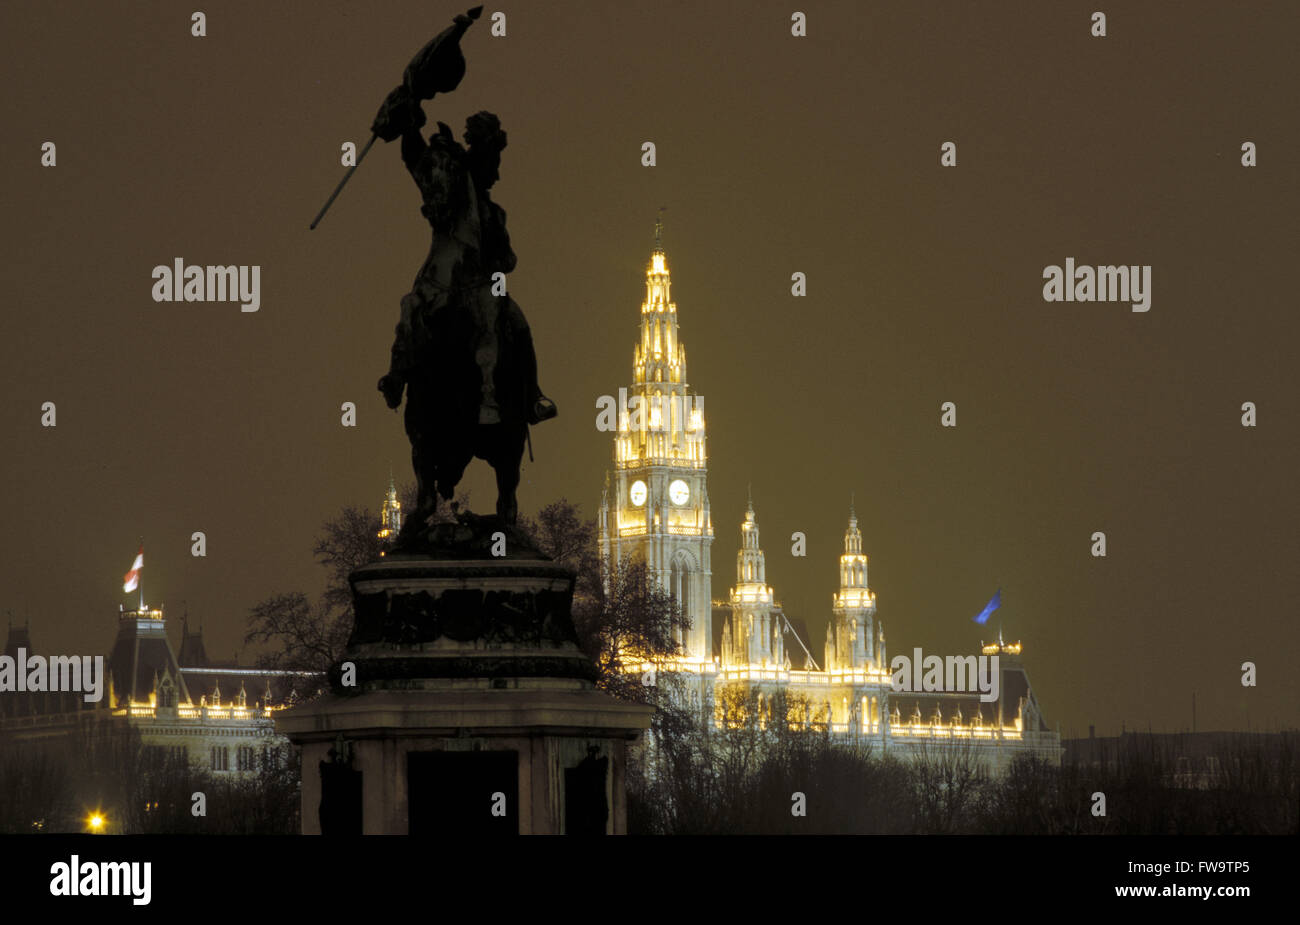 AUT, l'Autriche, Vienne, l'archiduc Karl monument, dans l'arrière-plan l'hôtel de ville. Tau, Oesterreich, Wien, Erzherzog Karl Denkmal, Banque D'Images